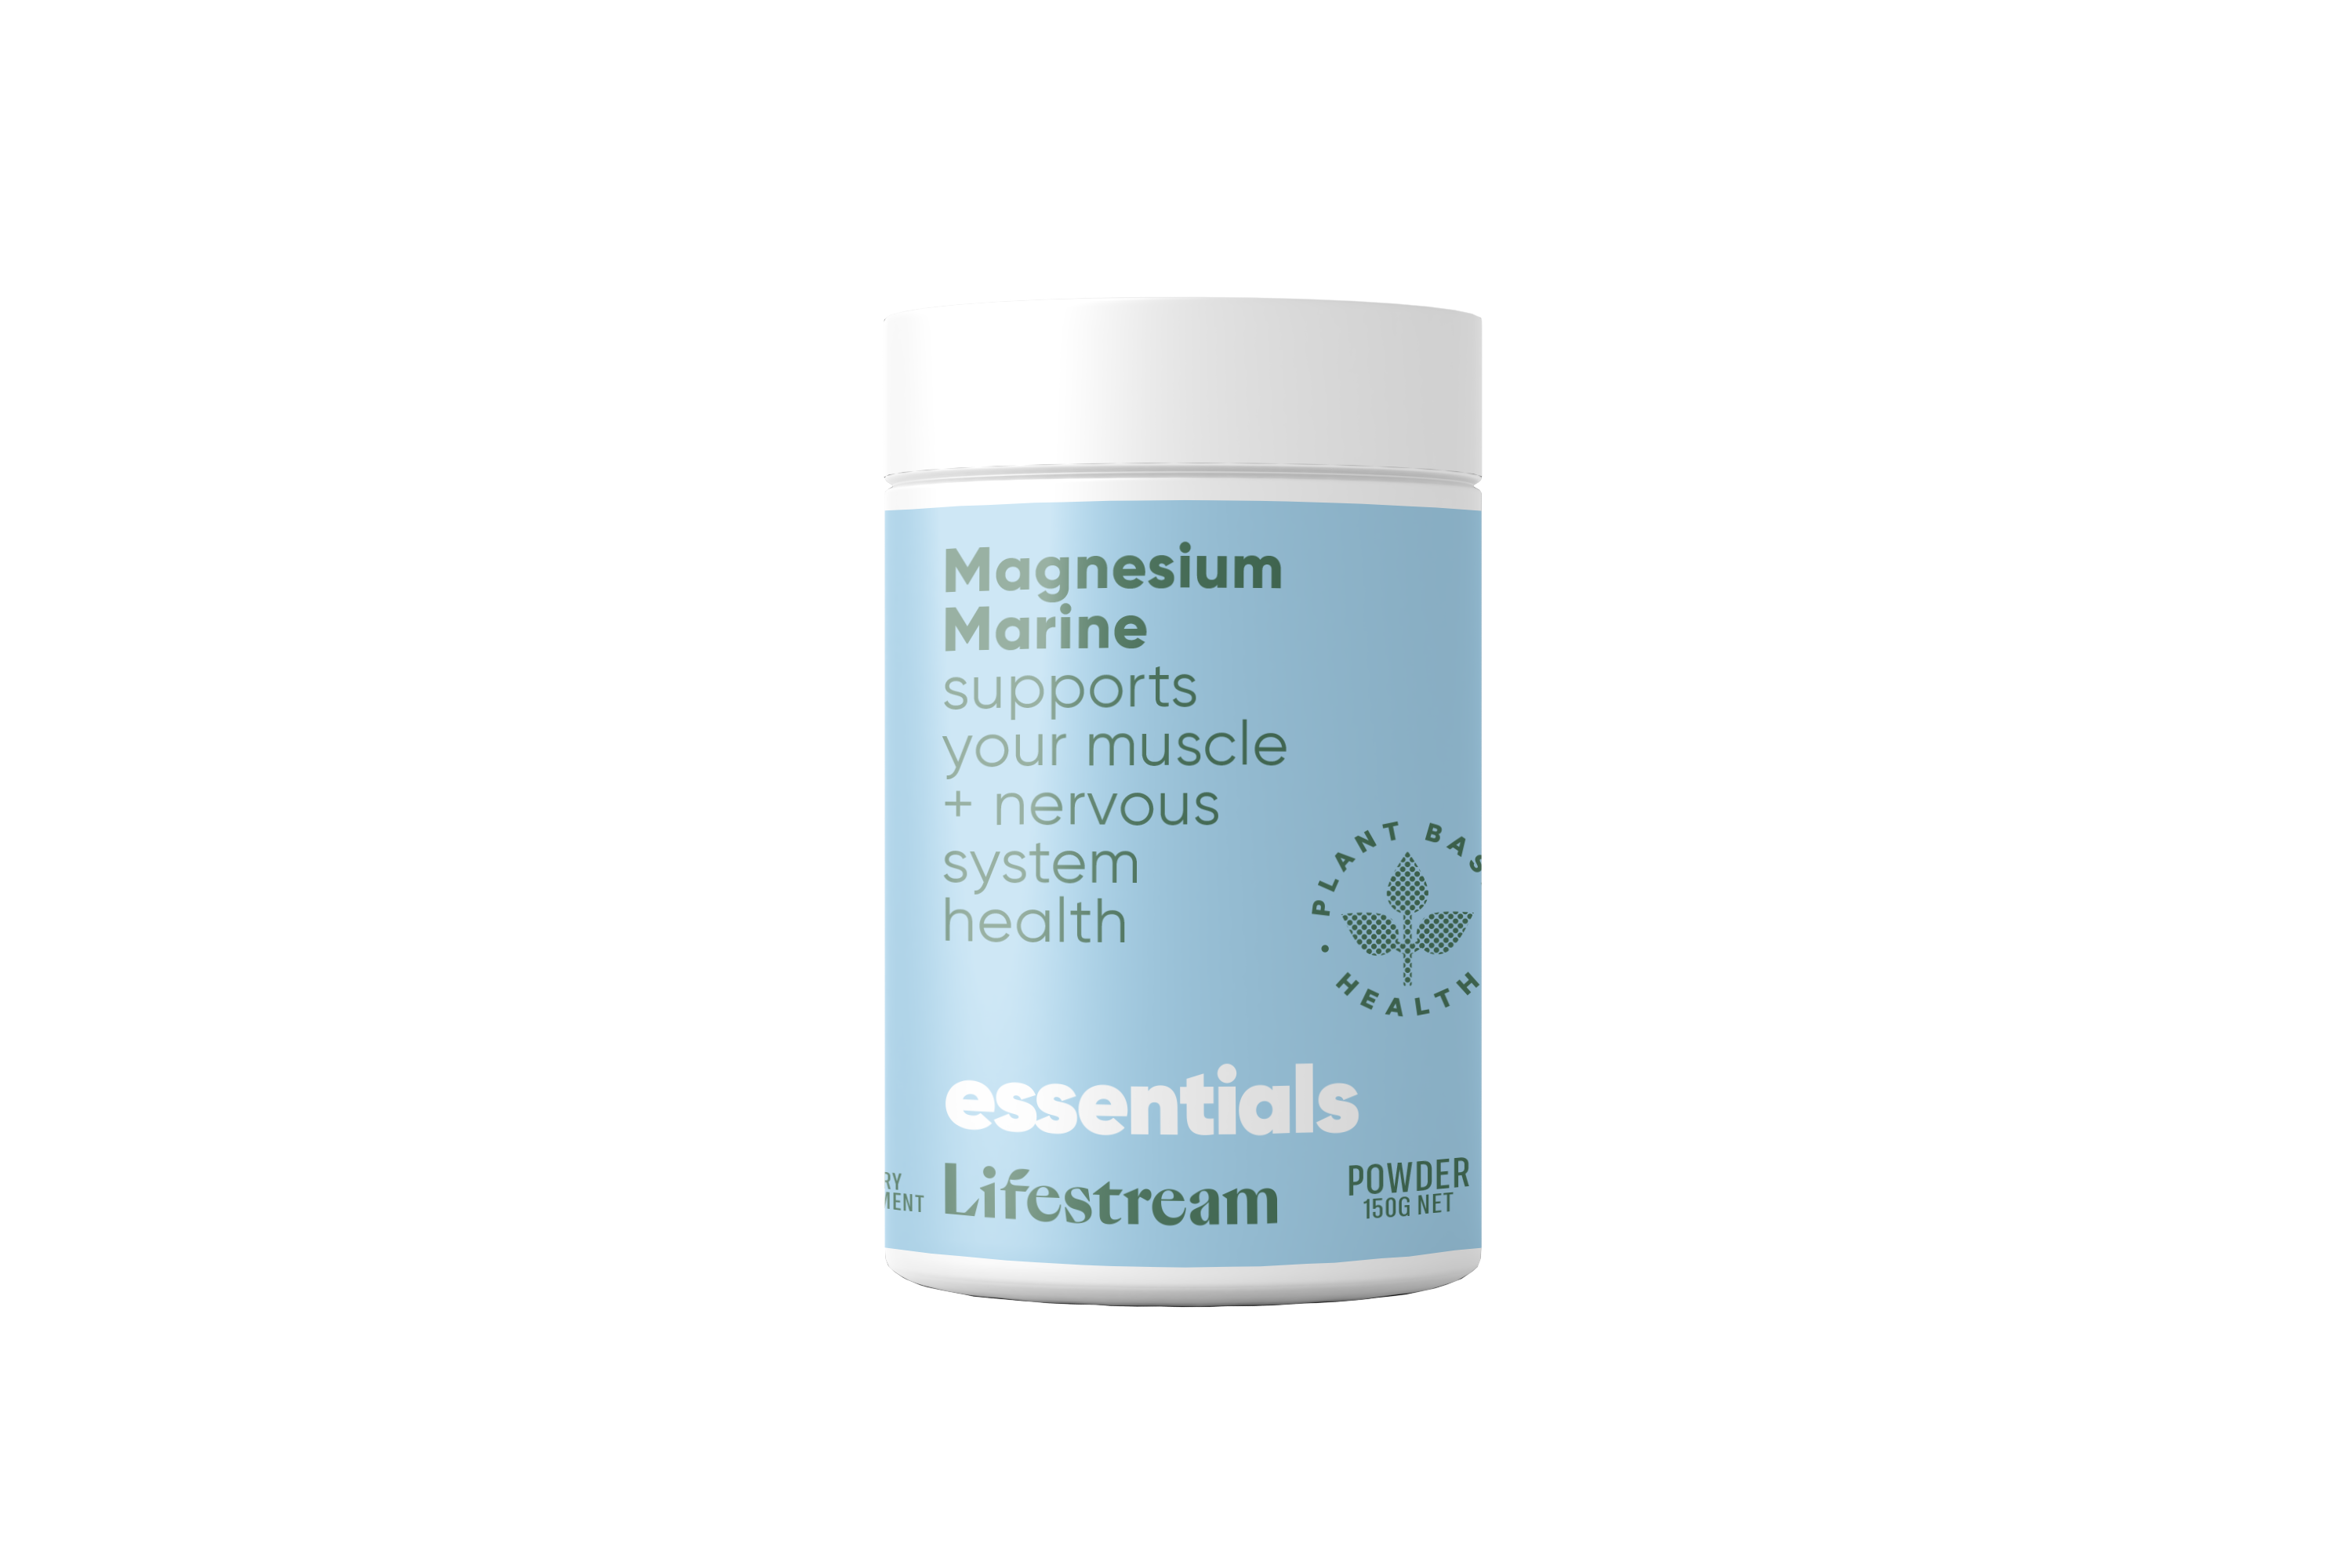 Lifestream Natural Magnesium 150g Powder